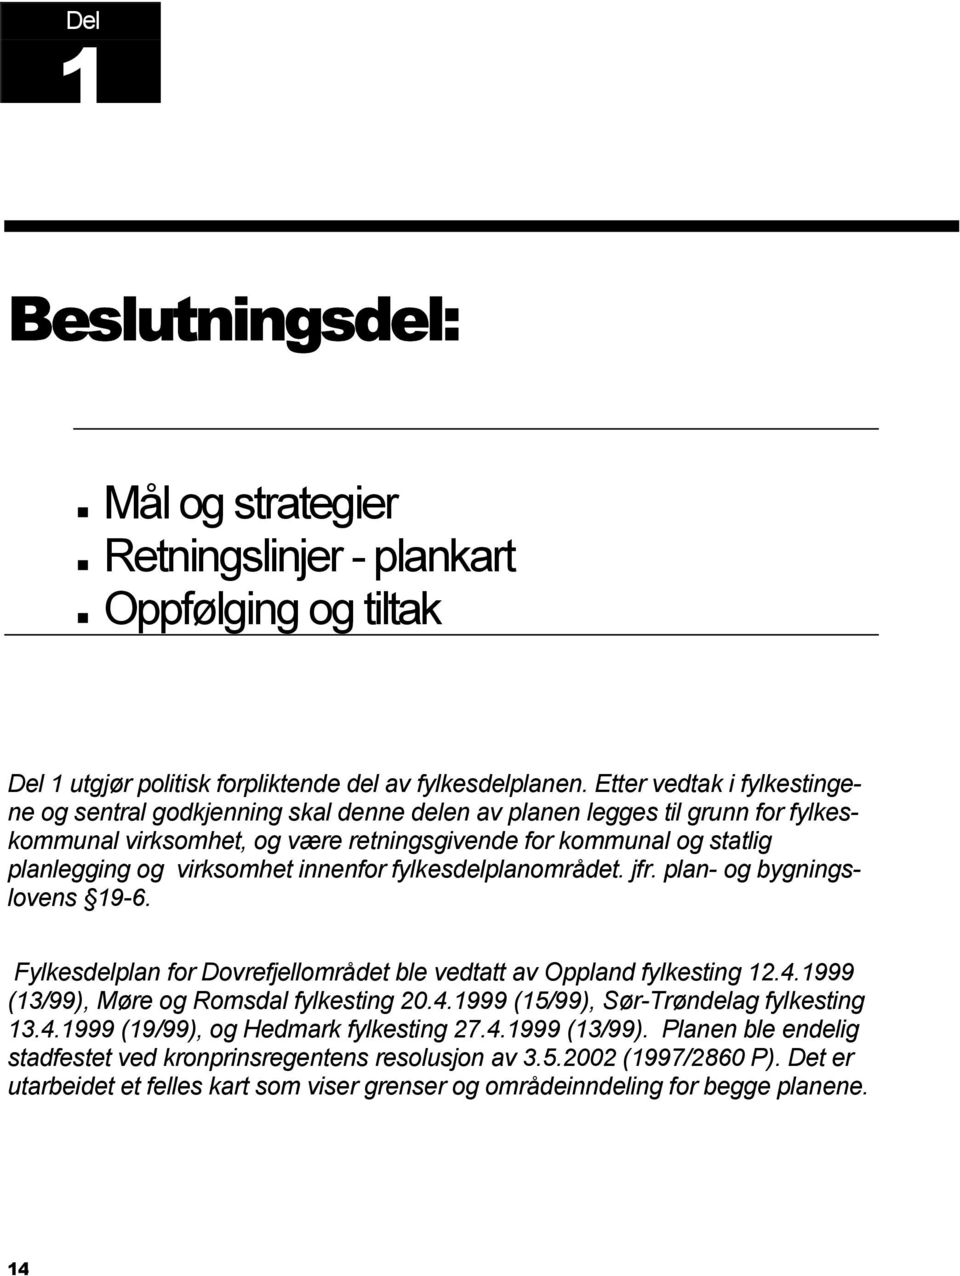 virksomhet innenfor fylkesdelplanområdet. jfr. plan- og bygningslovens 19-6. Fylkesdelplan for Dovrefjellområdet ble vedtatt av Oppland fylkesting 12.4.1999 (13/99), Møre og Romsdal fylkesting 20.4.1999 (15/99), Sør-Trøndelag fylkesting 13.